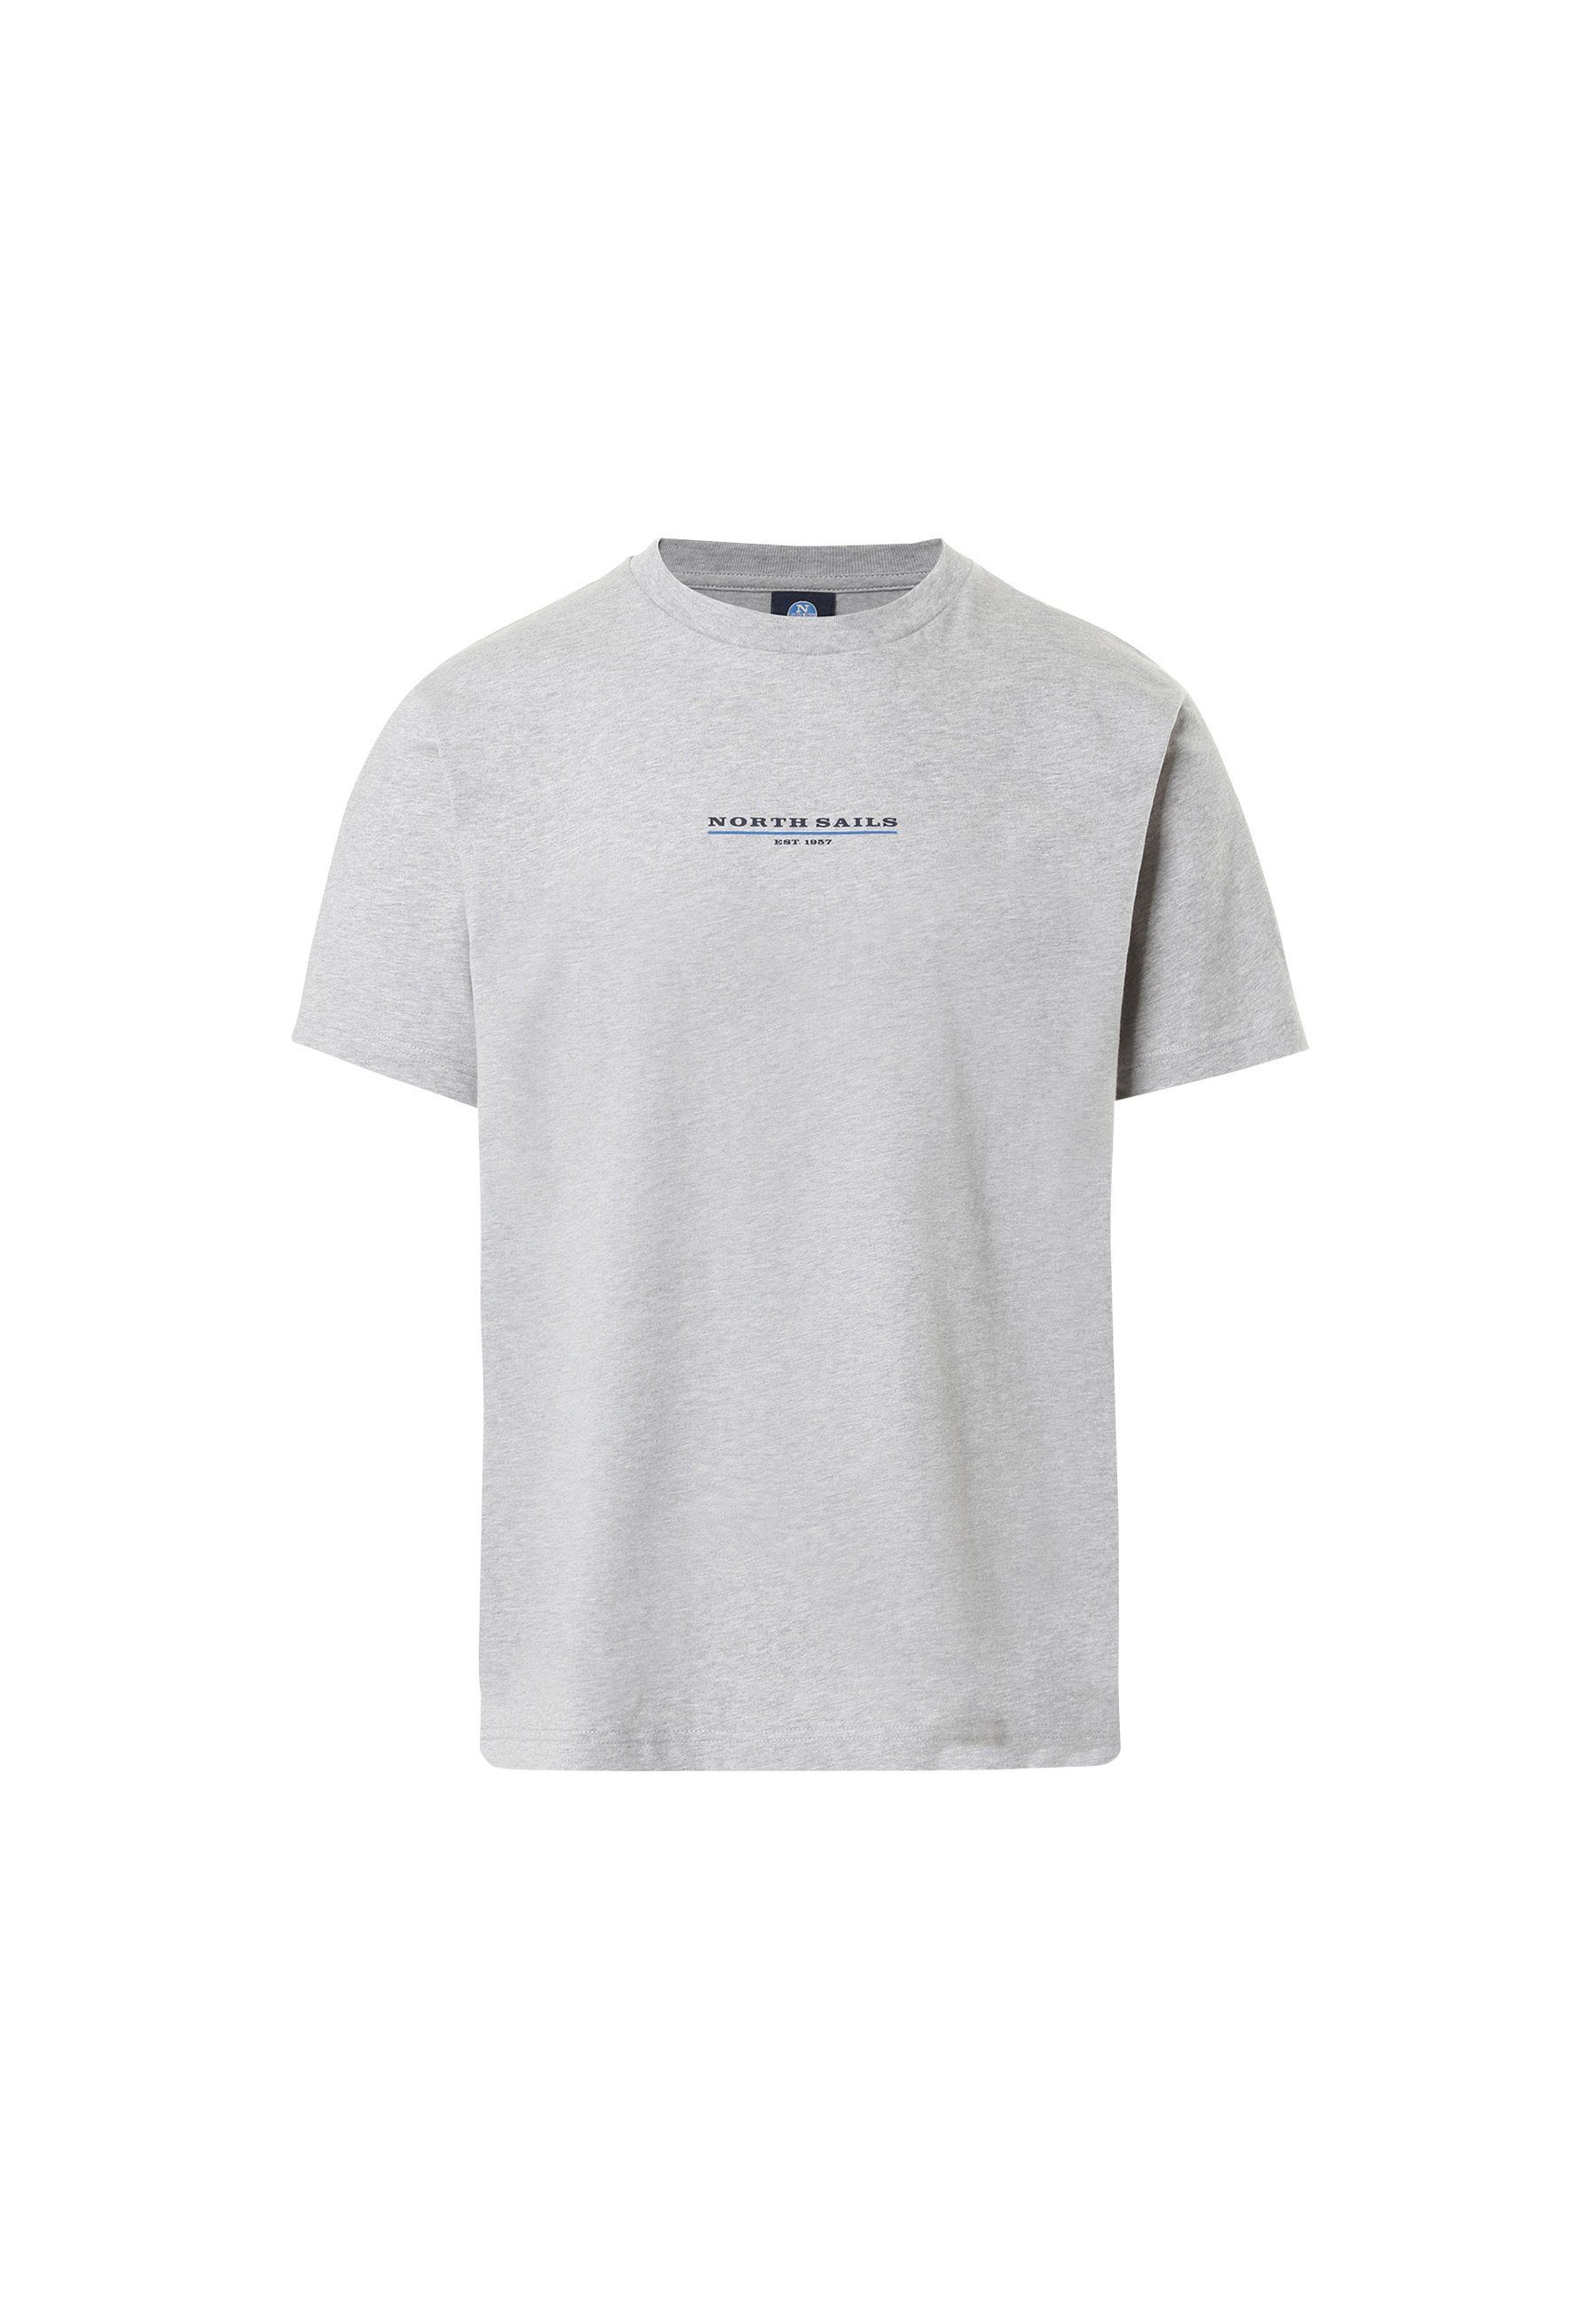 T-Shirt Sails T-Shirt Brustaufdruck North grey mit